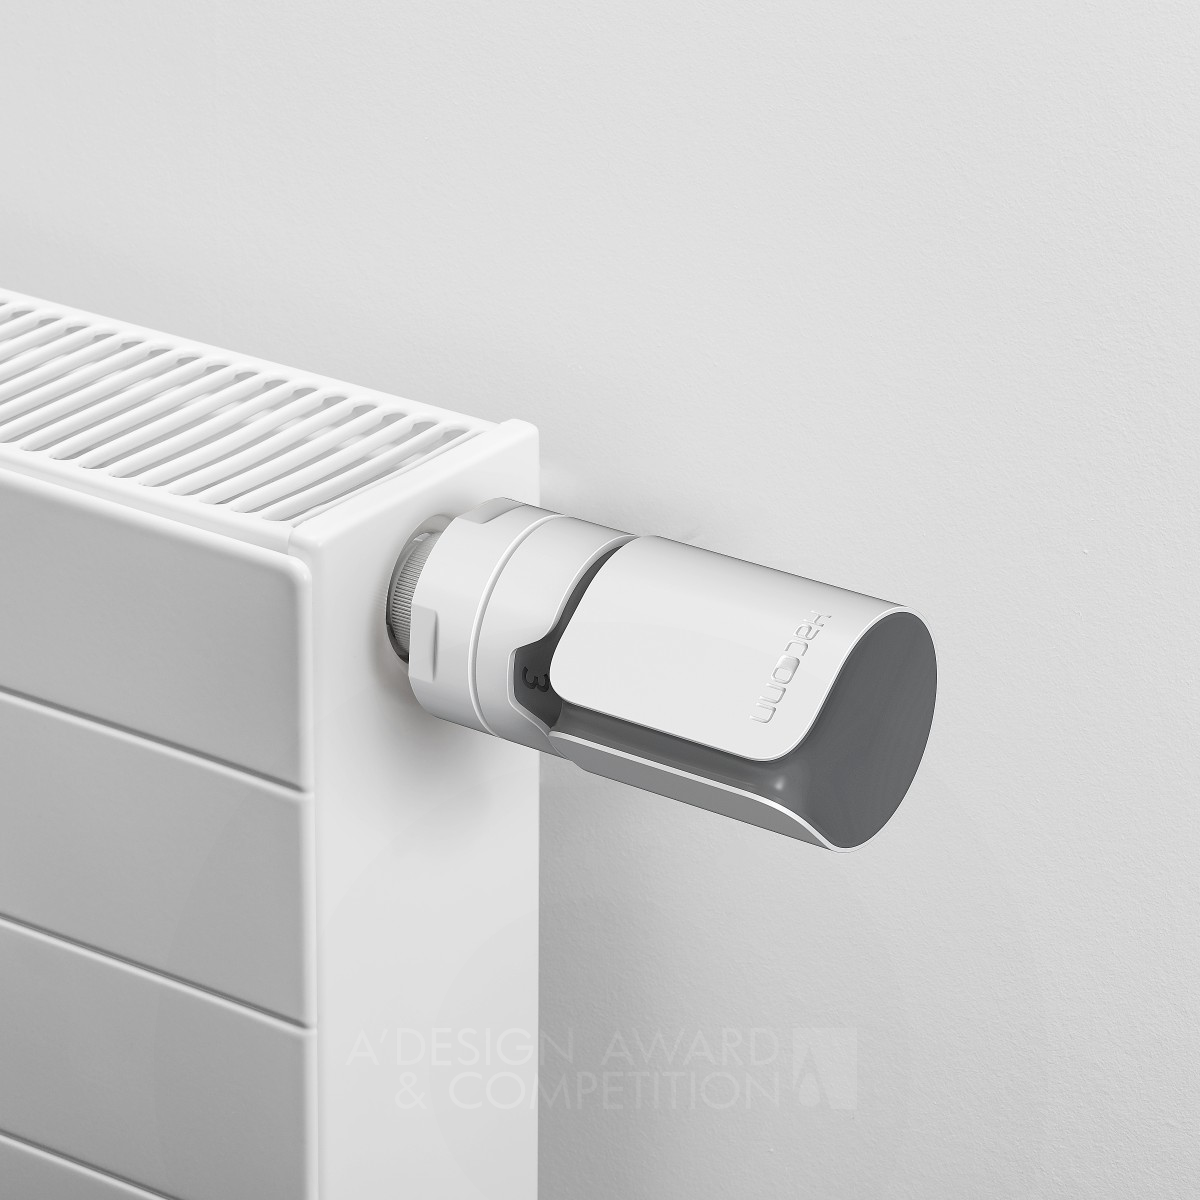 하콘 라디에이터 온도조절기: 자동으로 실내 온도를 조절하는 세련된 디자인